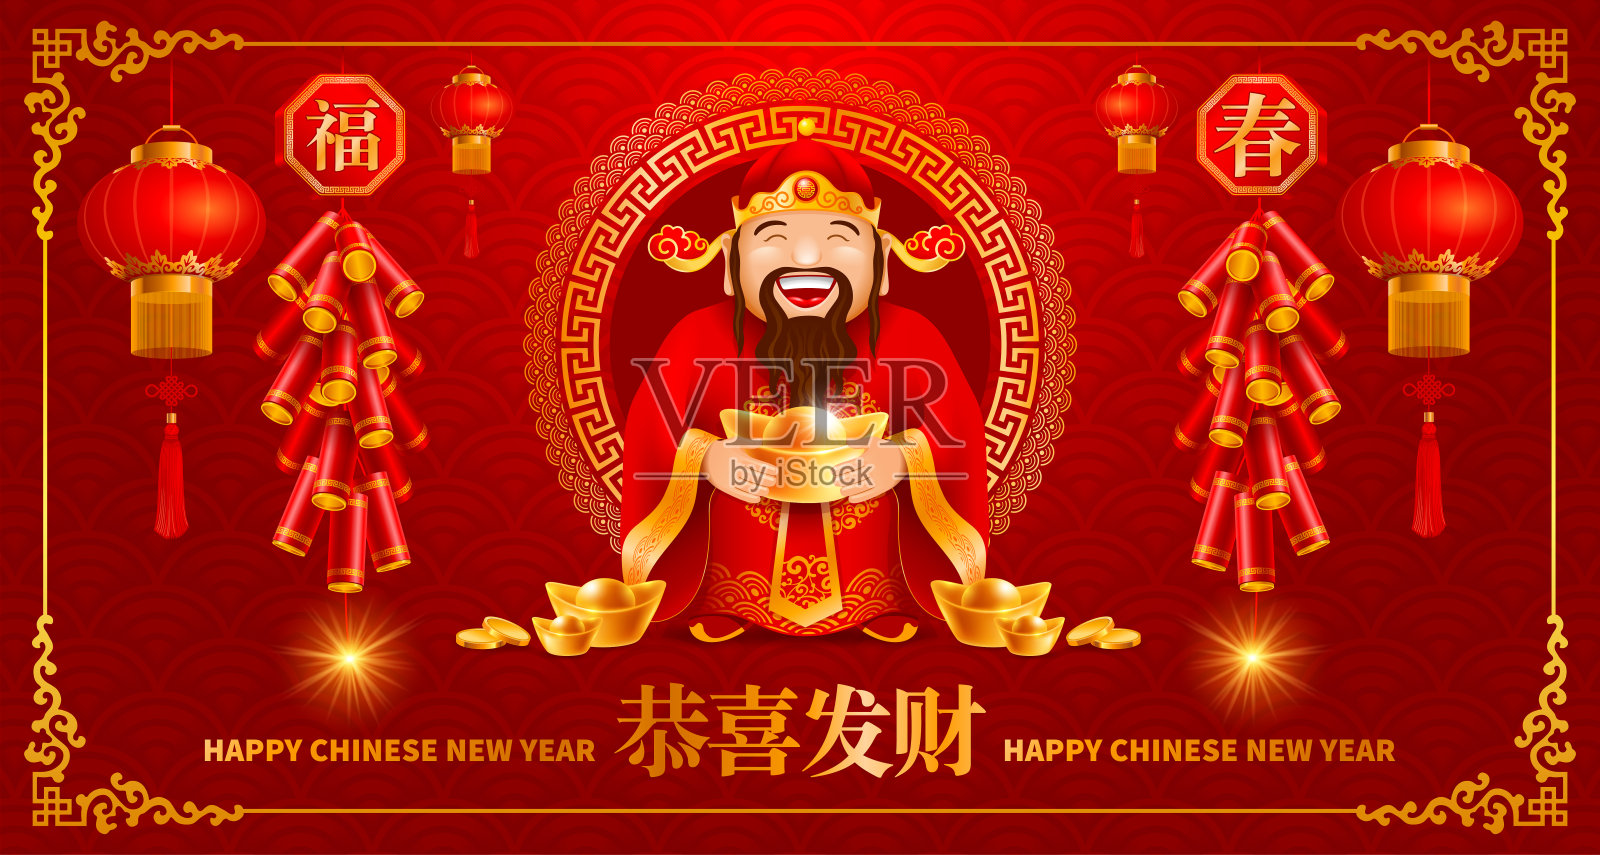 中国新年贺卡与中国财神设计模板素材